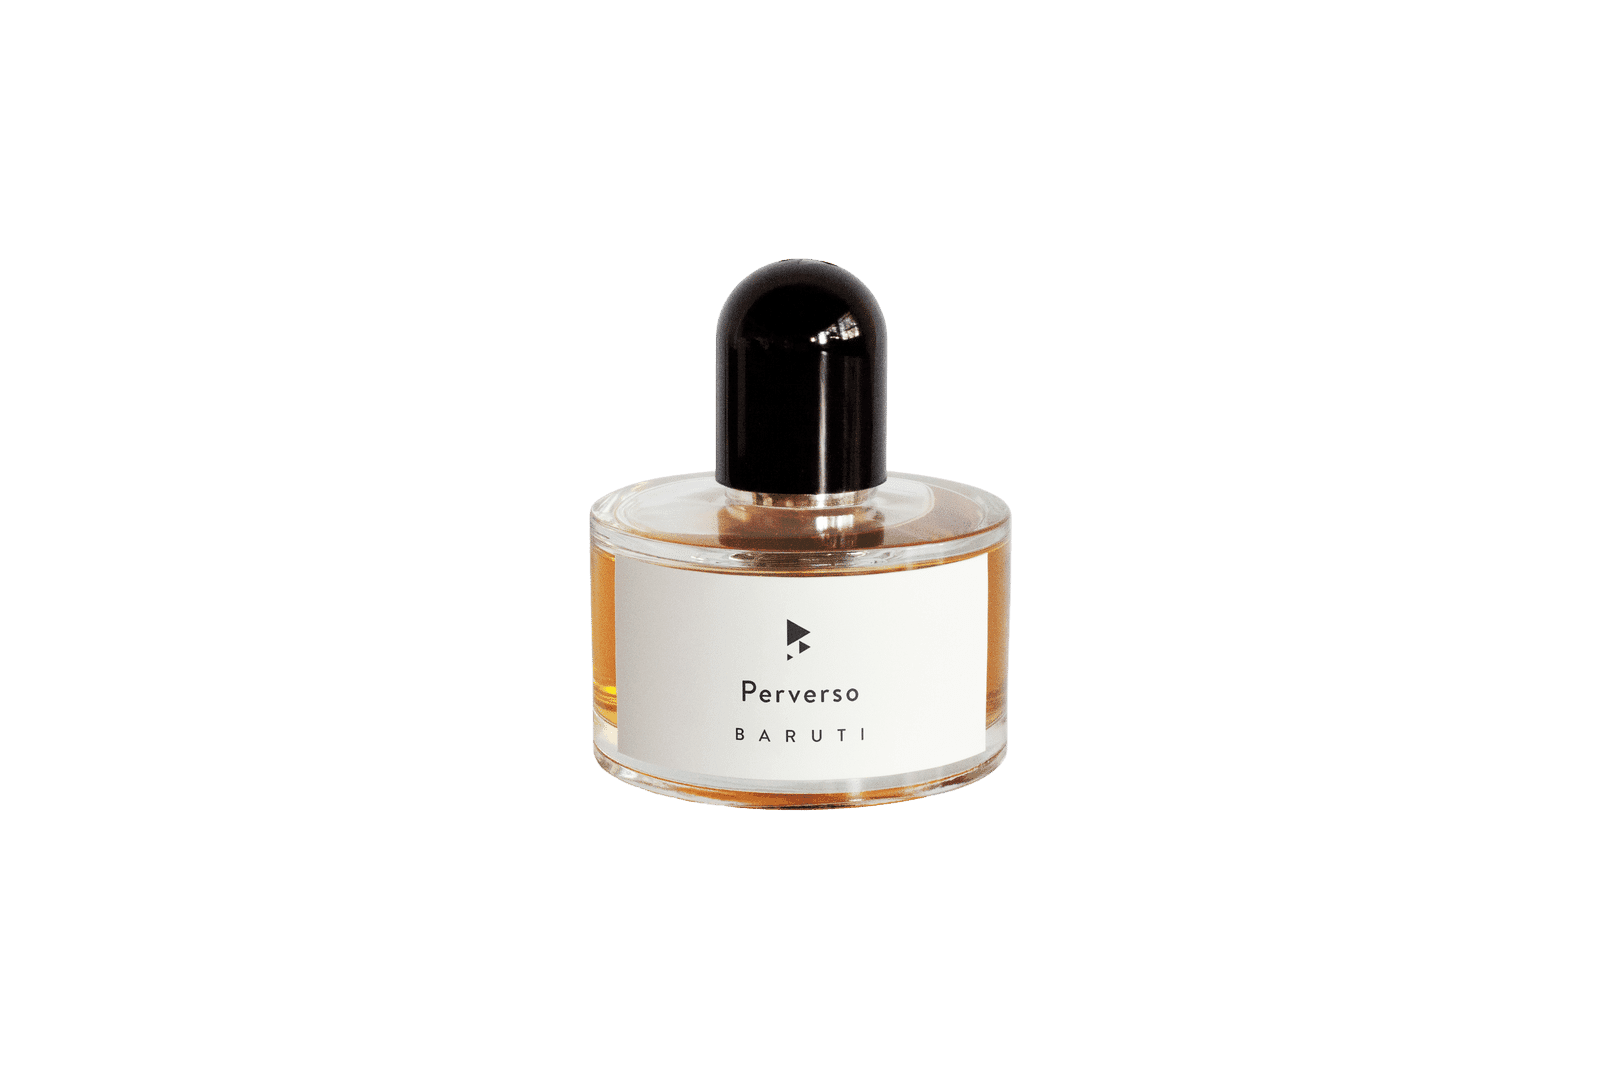 Baruti - Perverso 50 ml eau de parfum | Perfume Lounge